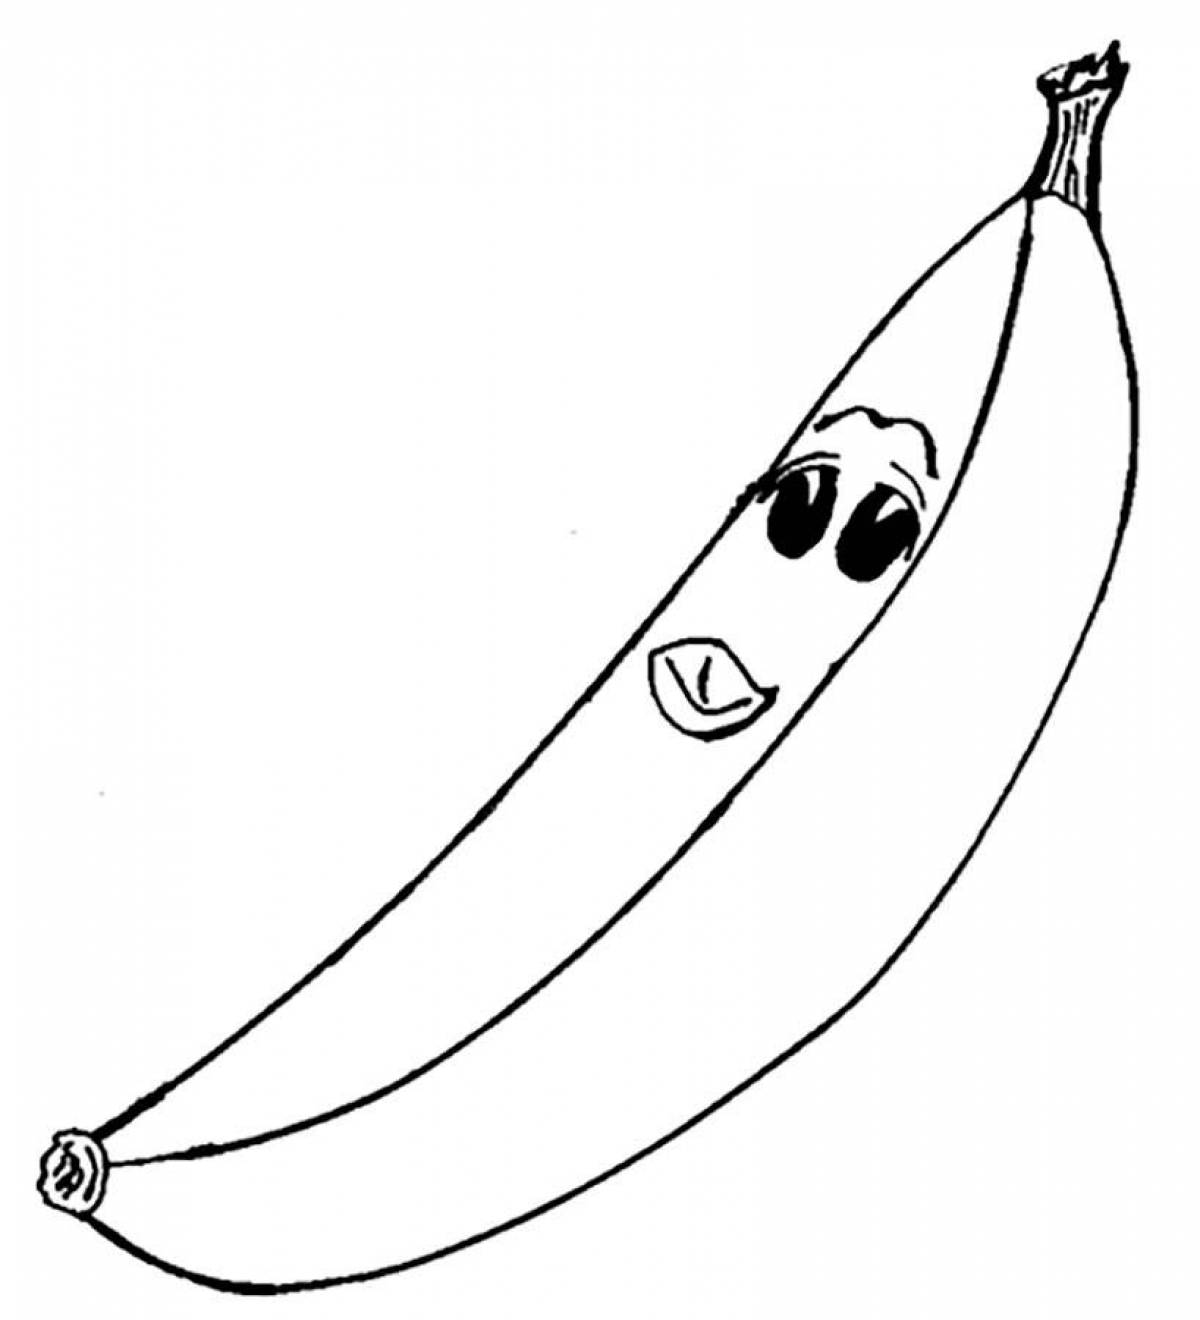 Увлекательная раскраска бананов для детей